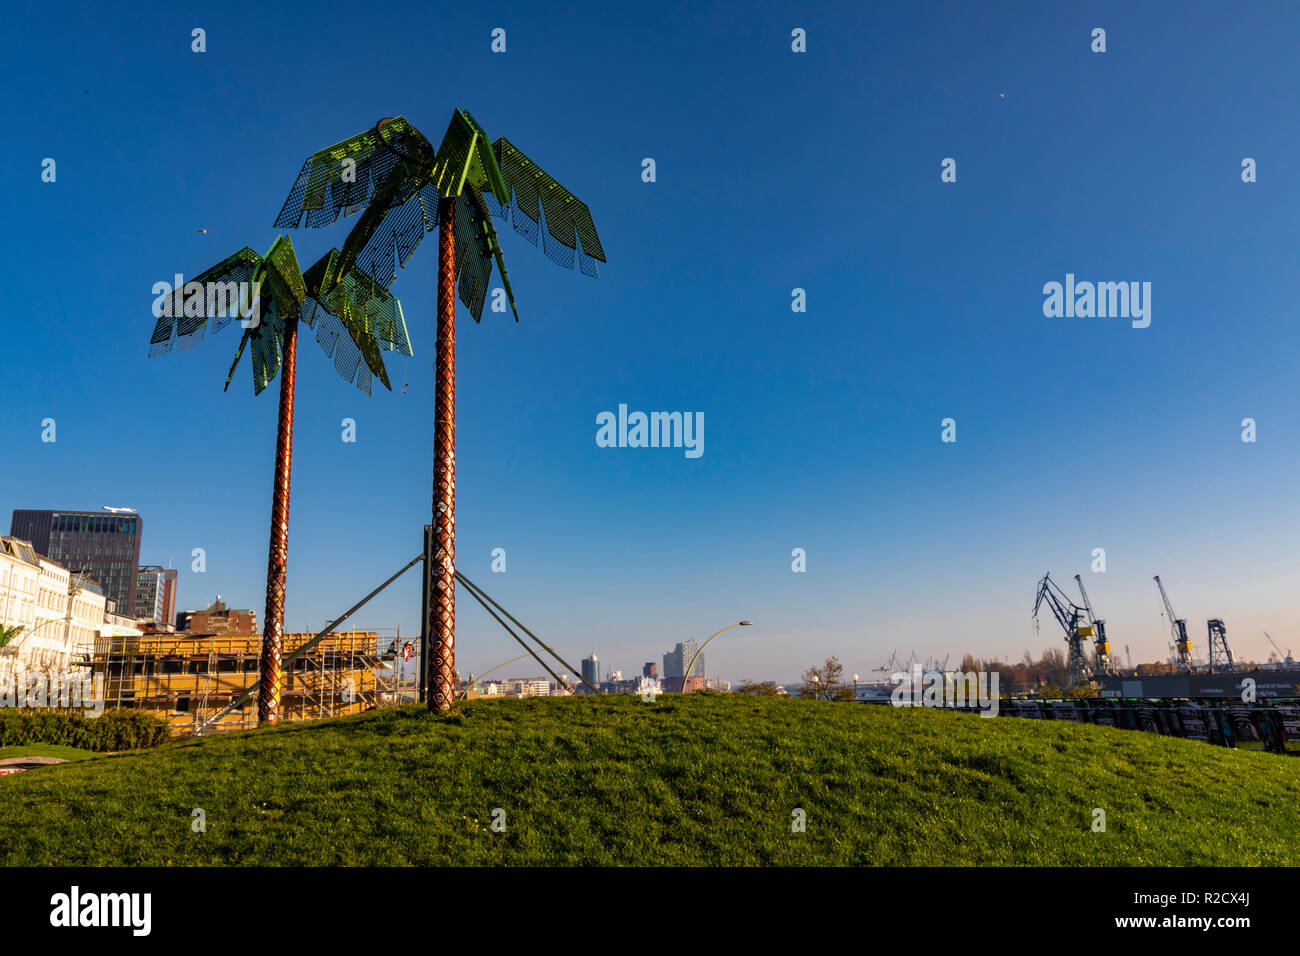 Hambourg, Allemagne - le 17 novembre 2018 : une vue sur des palmiers dans Park Fiction dans le port de Hambourg, en Allemagne lors d'une journée ensoleillée. Banque D'Images